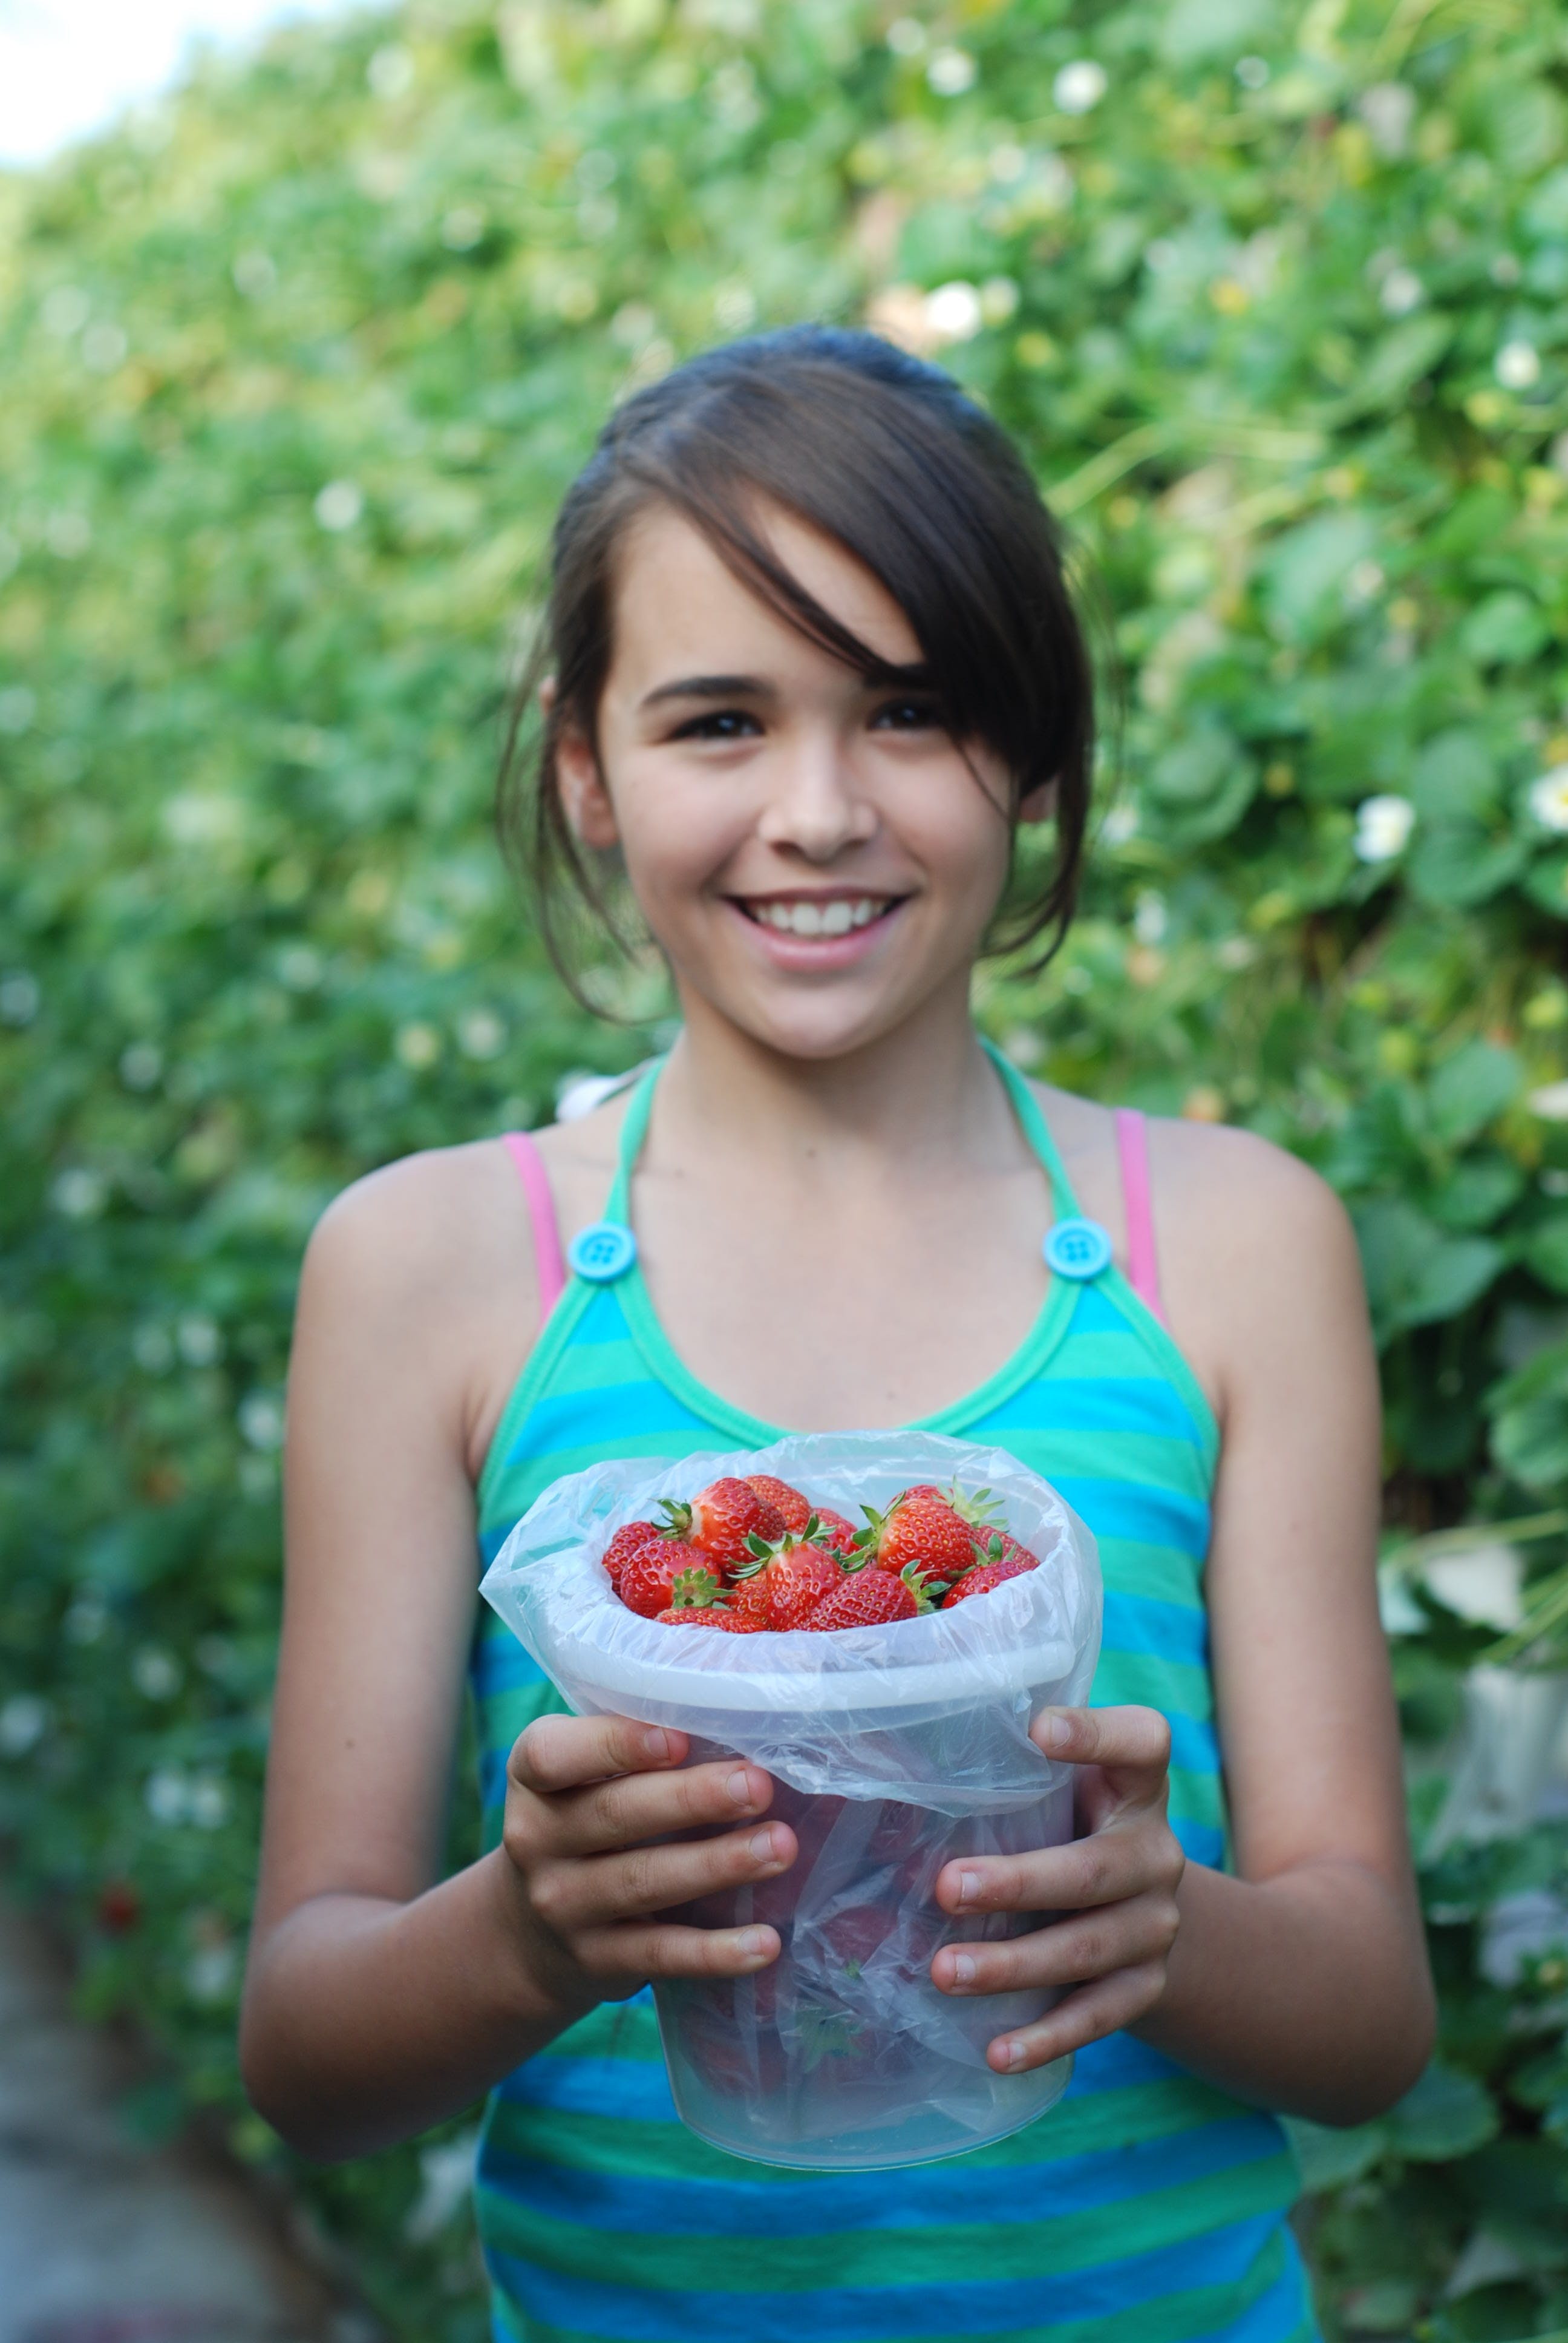 Ricardoes Tomatoes And Strawberries Farm, Port Macquarie - thumb 0